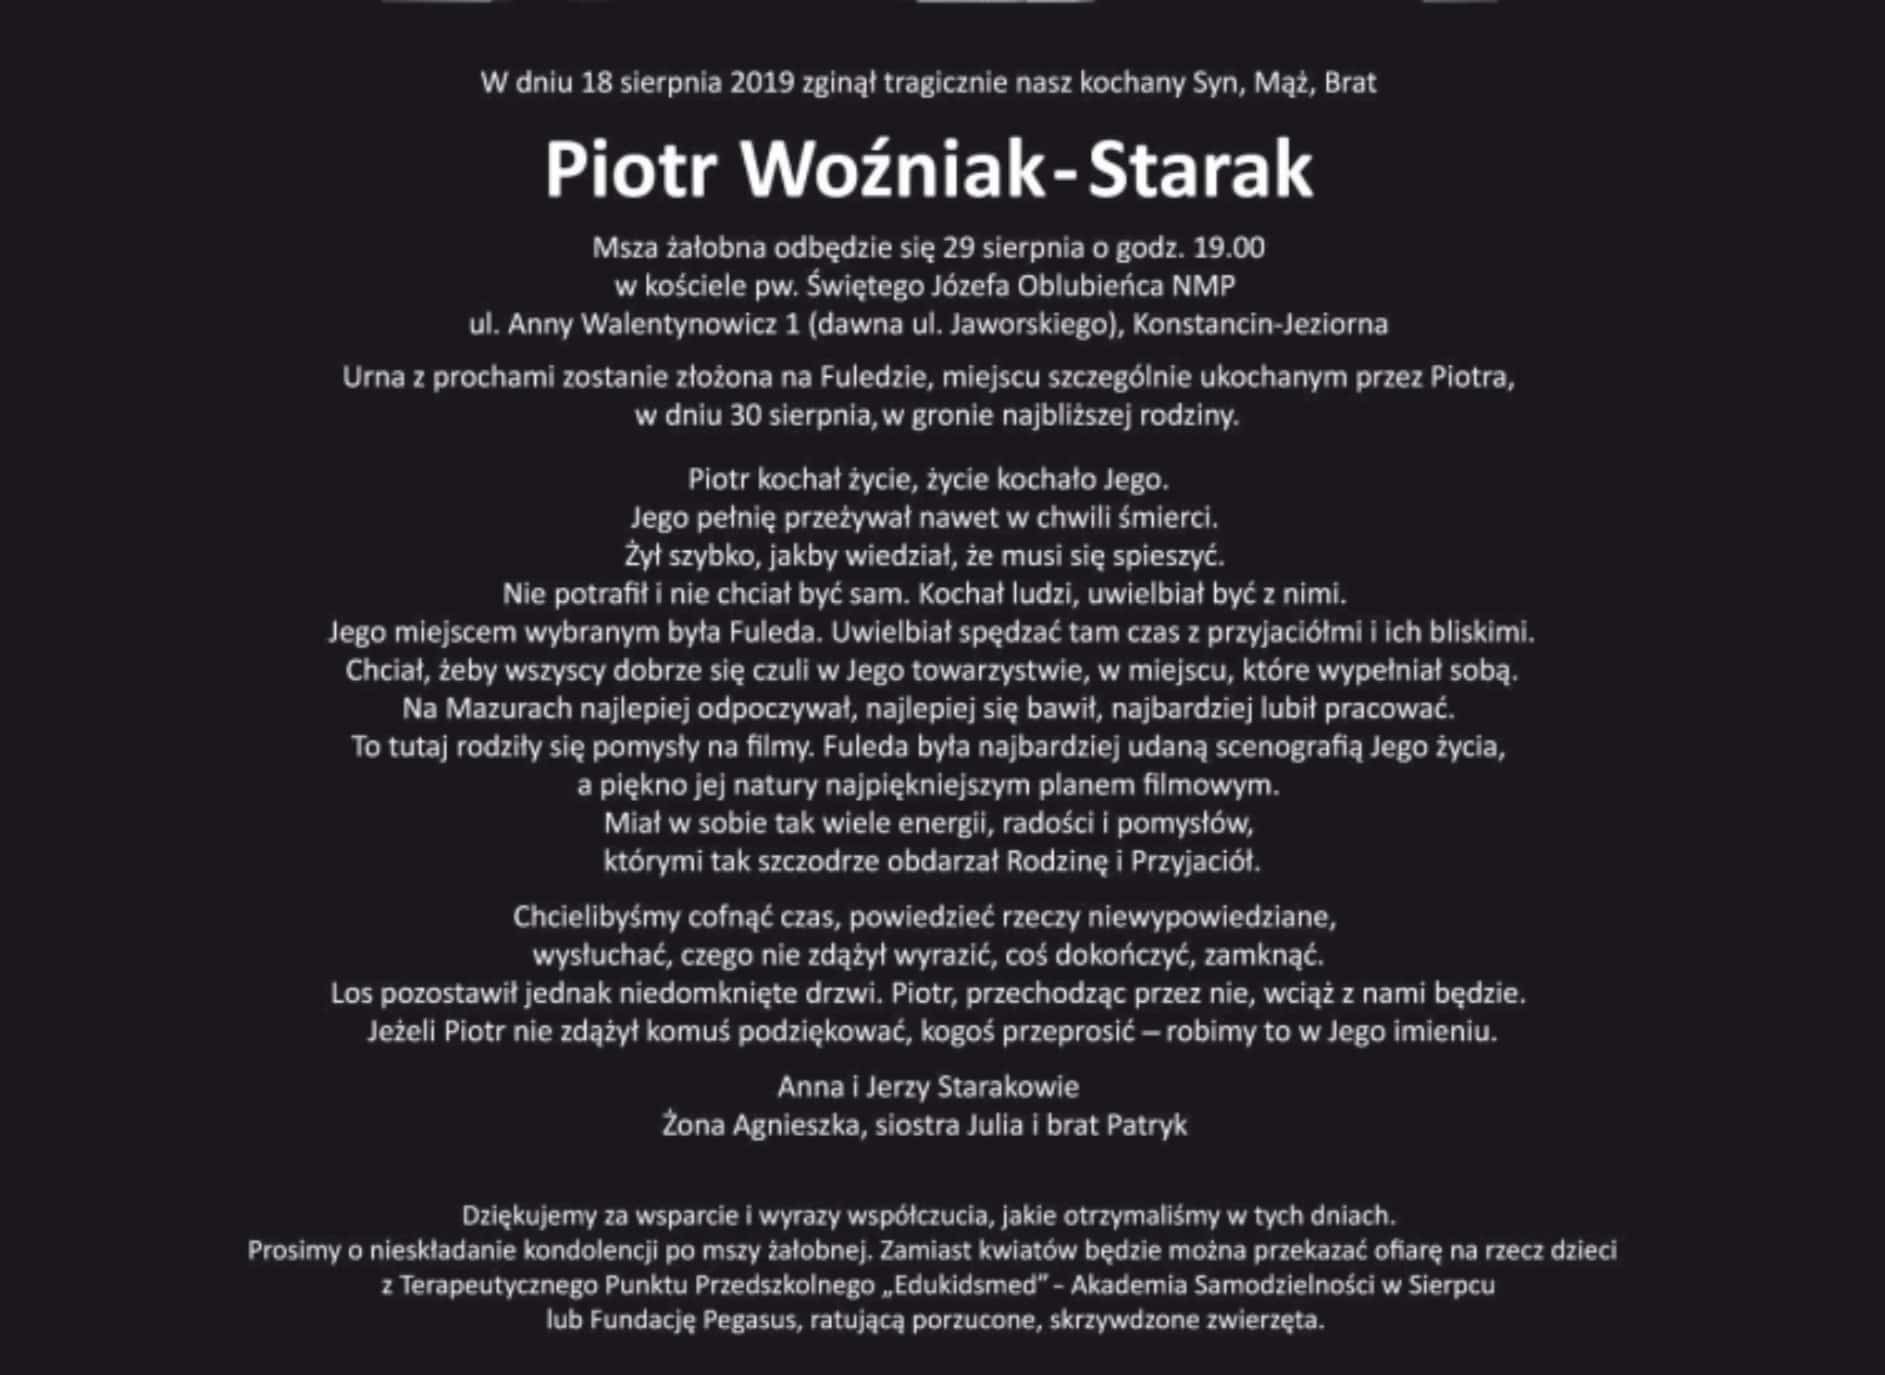 Rodzina Piotra Woźniak-Staraka opublikowała nekrolog w gazecie